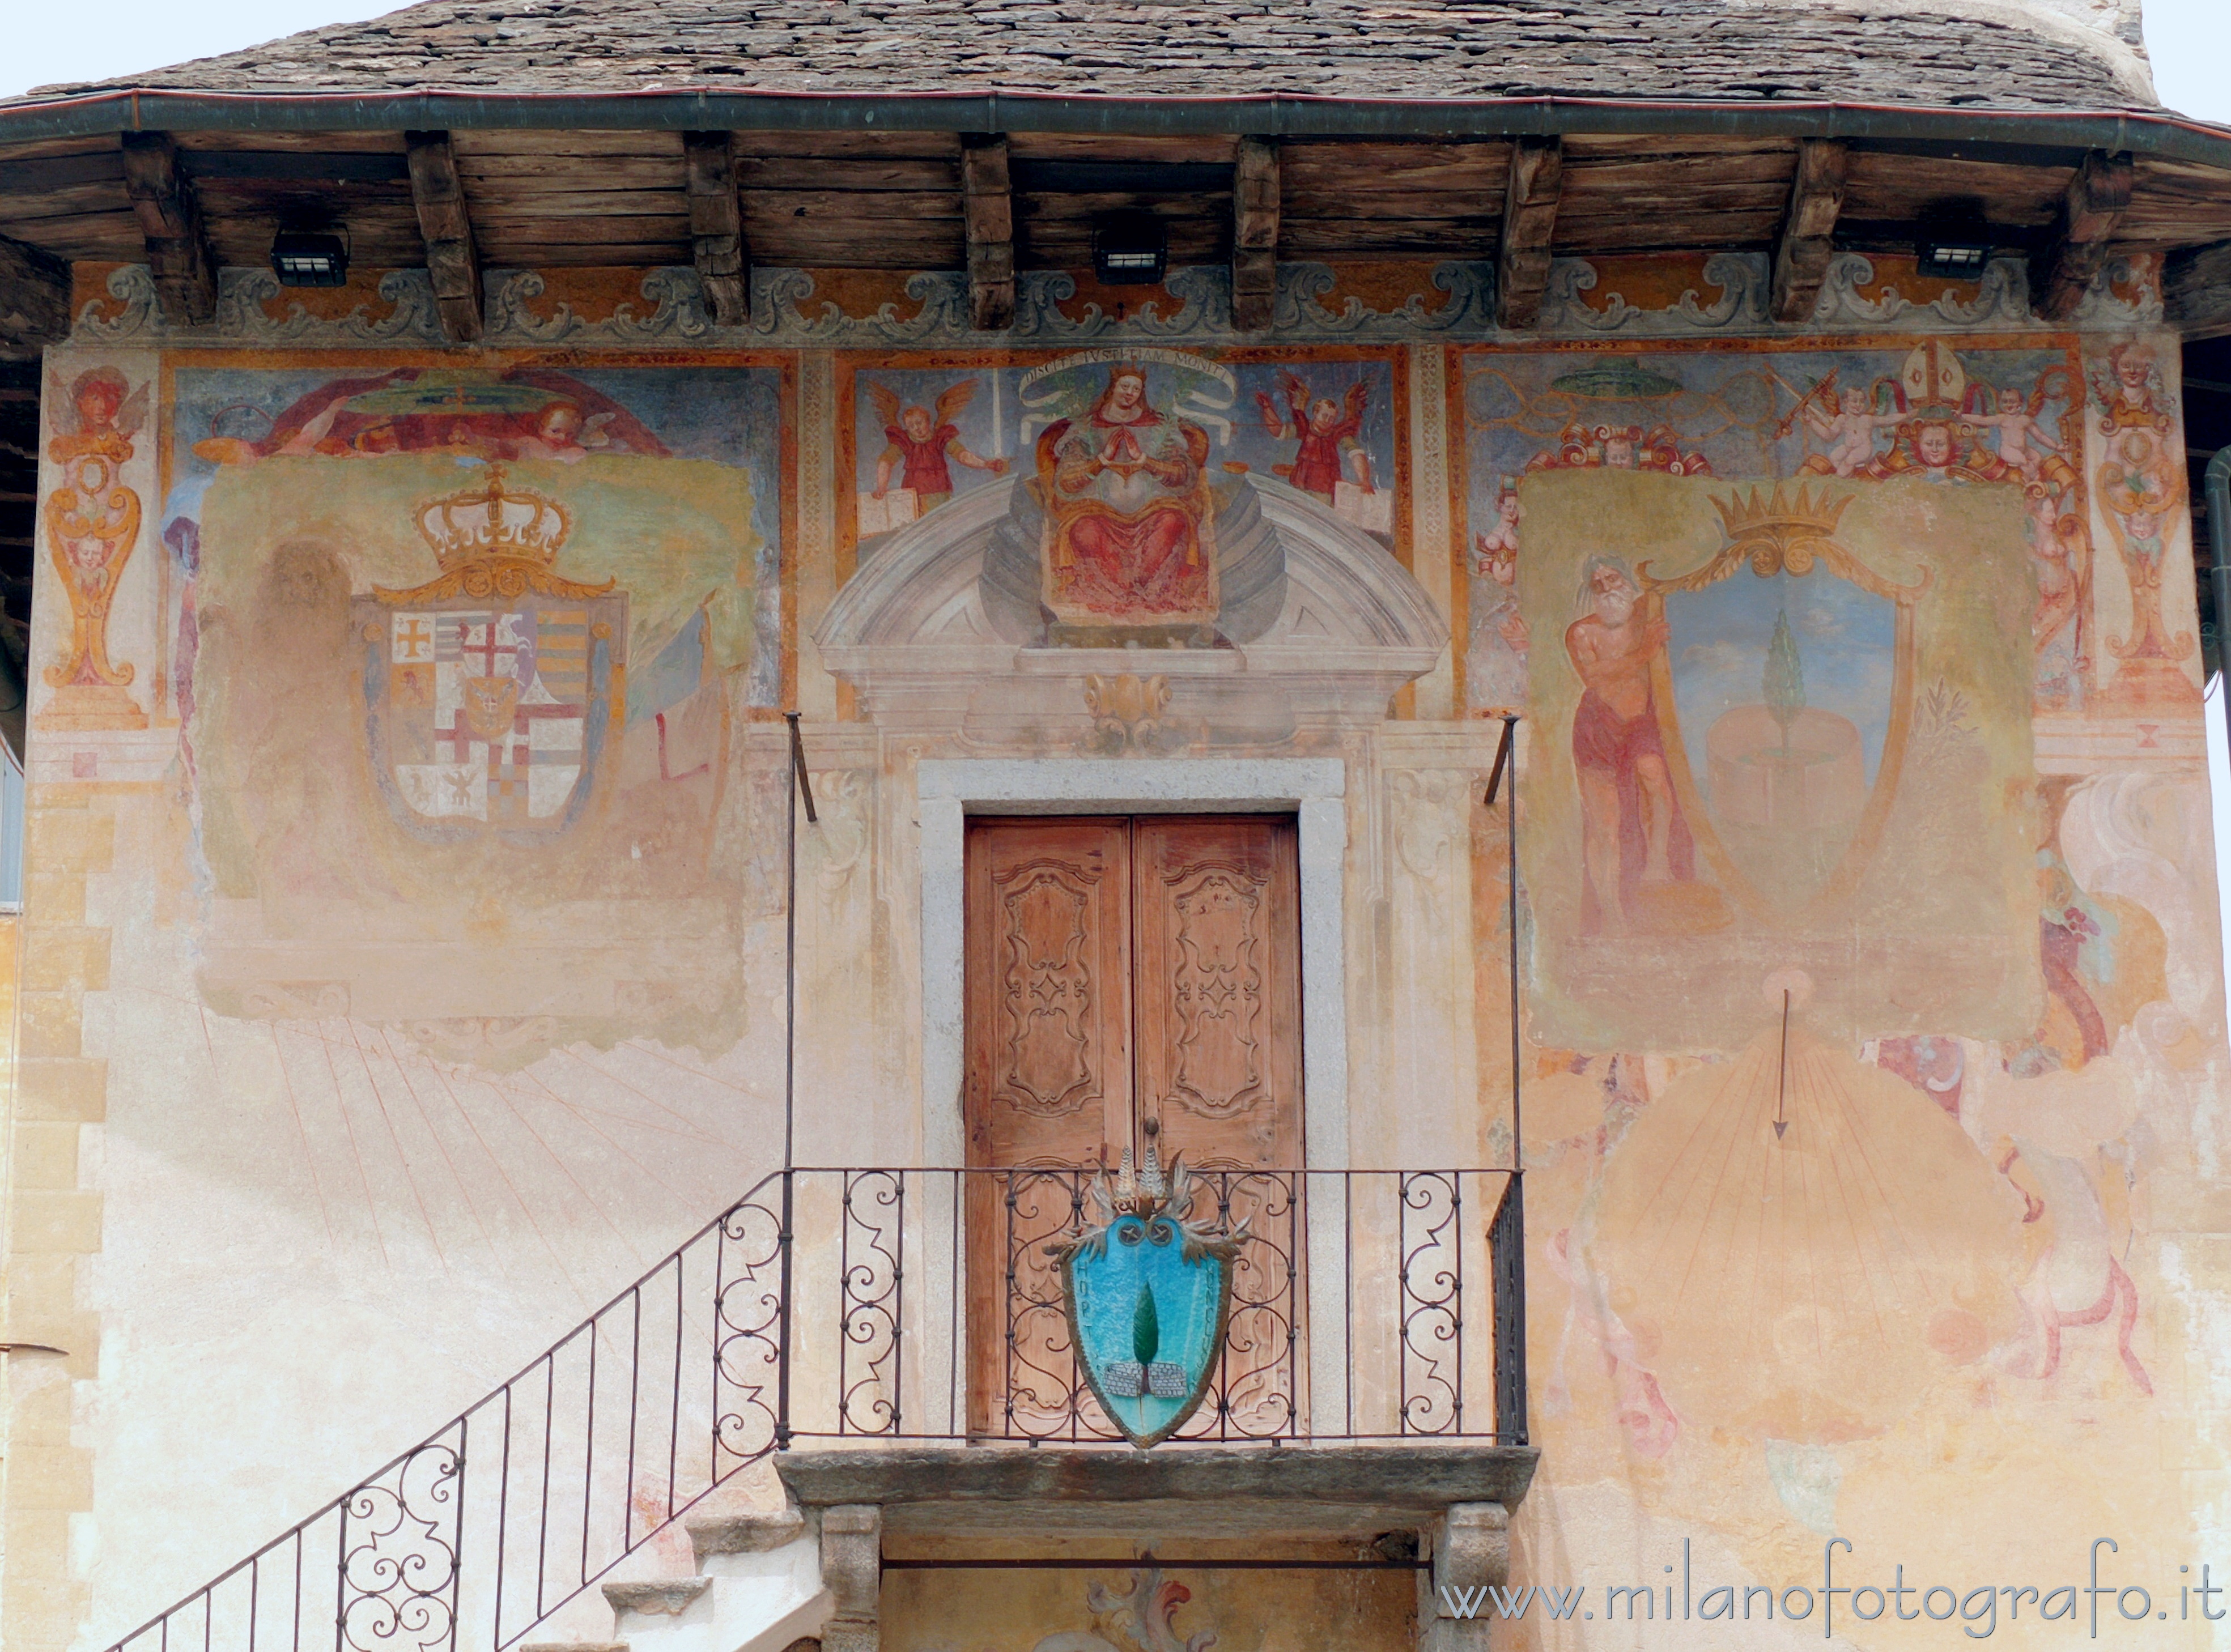 Orta San Giulio (Novara, Italy): Frescoed wall of the Palace of the Community - Orta San Giulio (Novara, Italy)